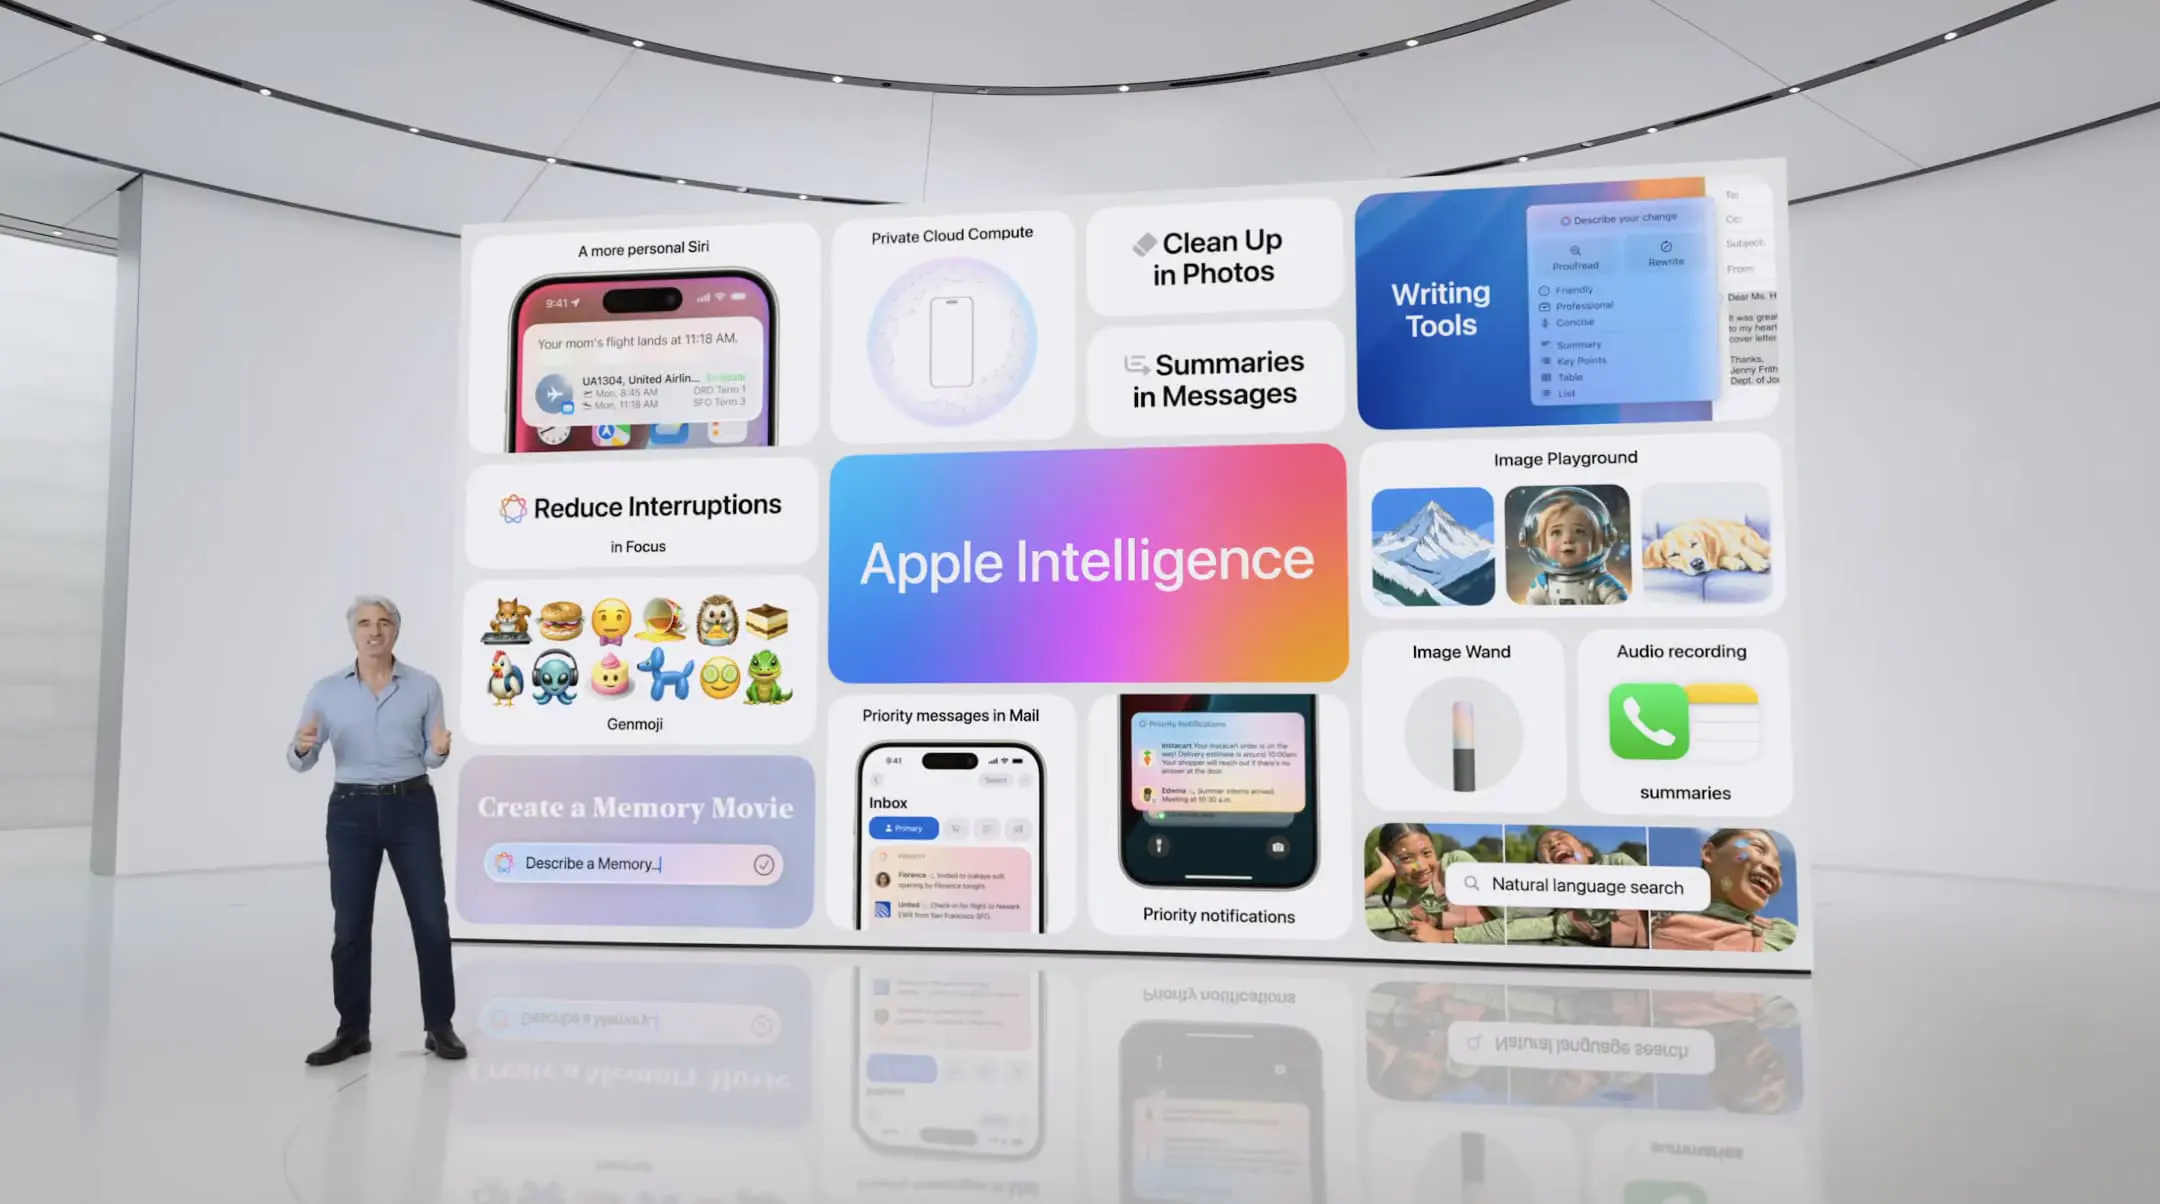 Chi tiết các tính năng và công dụng của Apple Intelligence